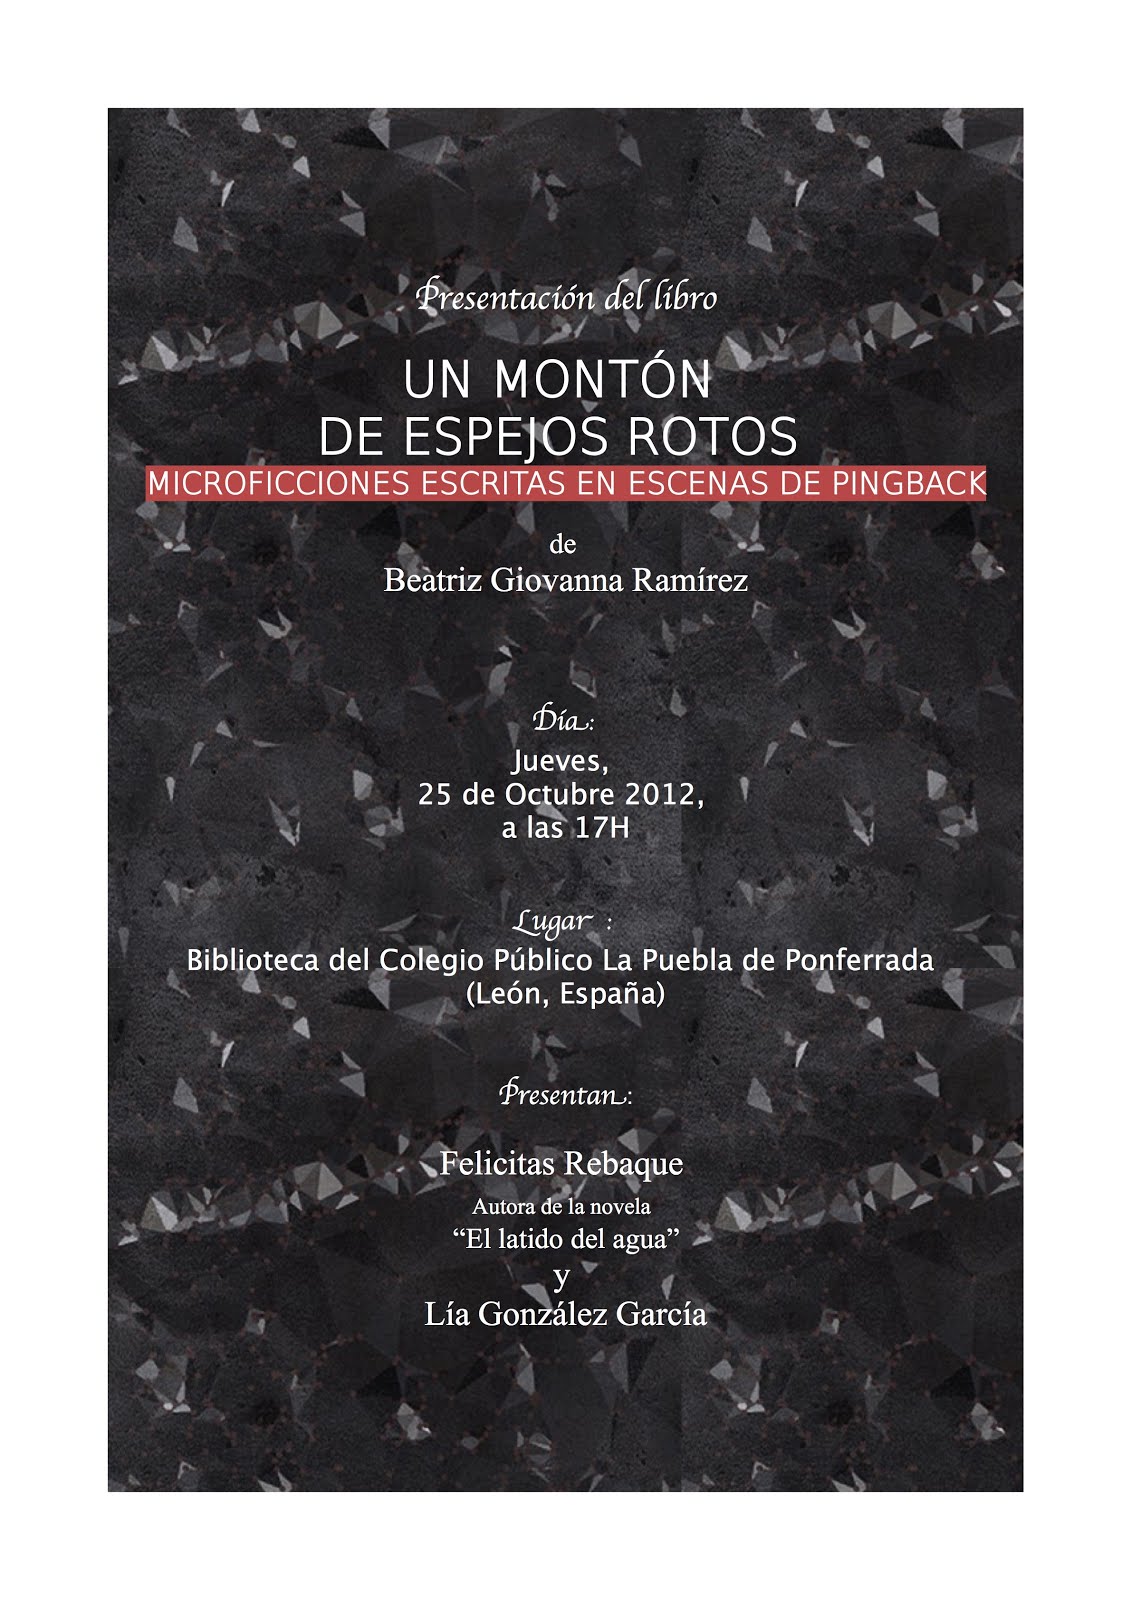 Presentación del libro de microrrelatos «Un montón de espejos rotos» en Ponferrada, León.